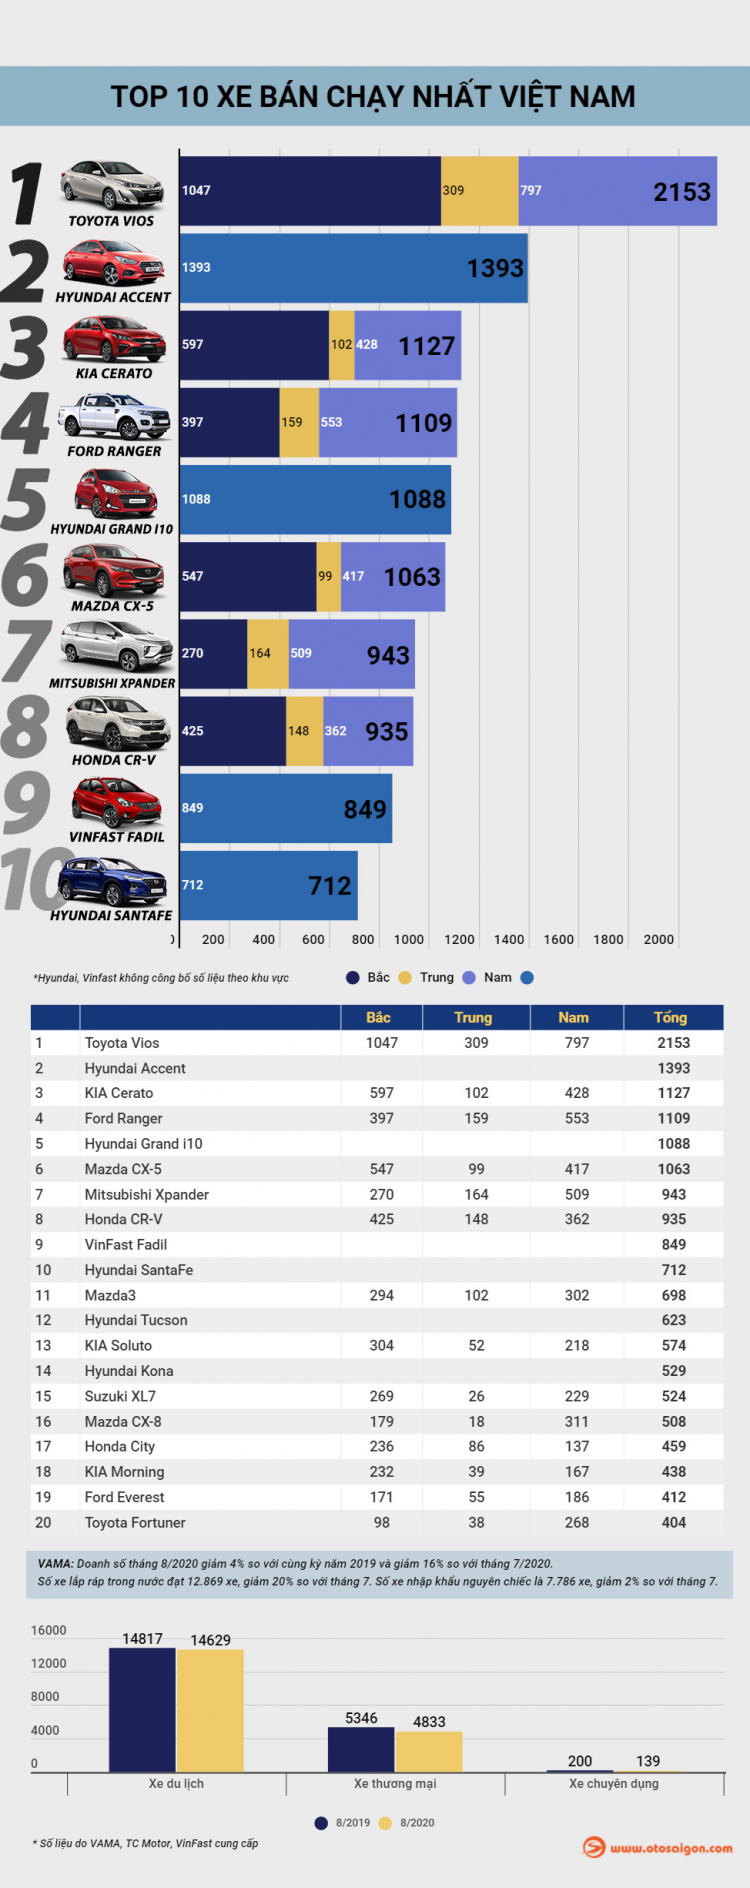 [Infographic] Top 10 xe bán chạy tại Việt Nam tháng 8/2020: Kia Cerato vào top 3, Vios bỏ xa các mẫu xe còn lại